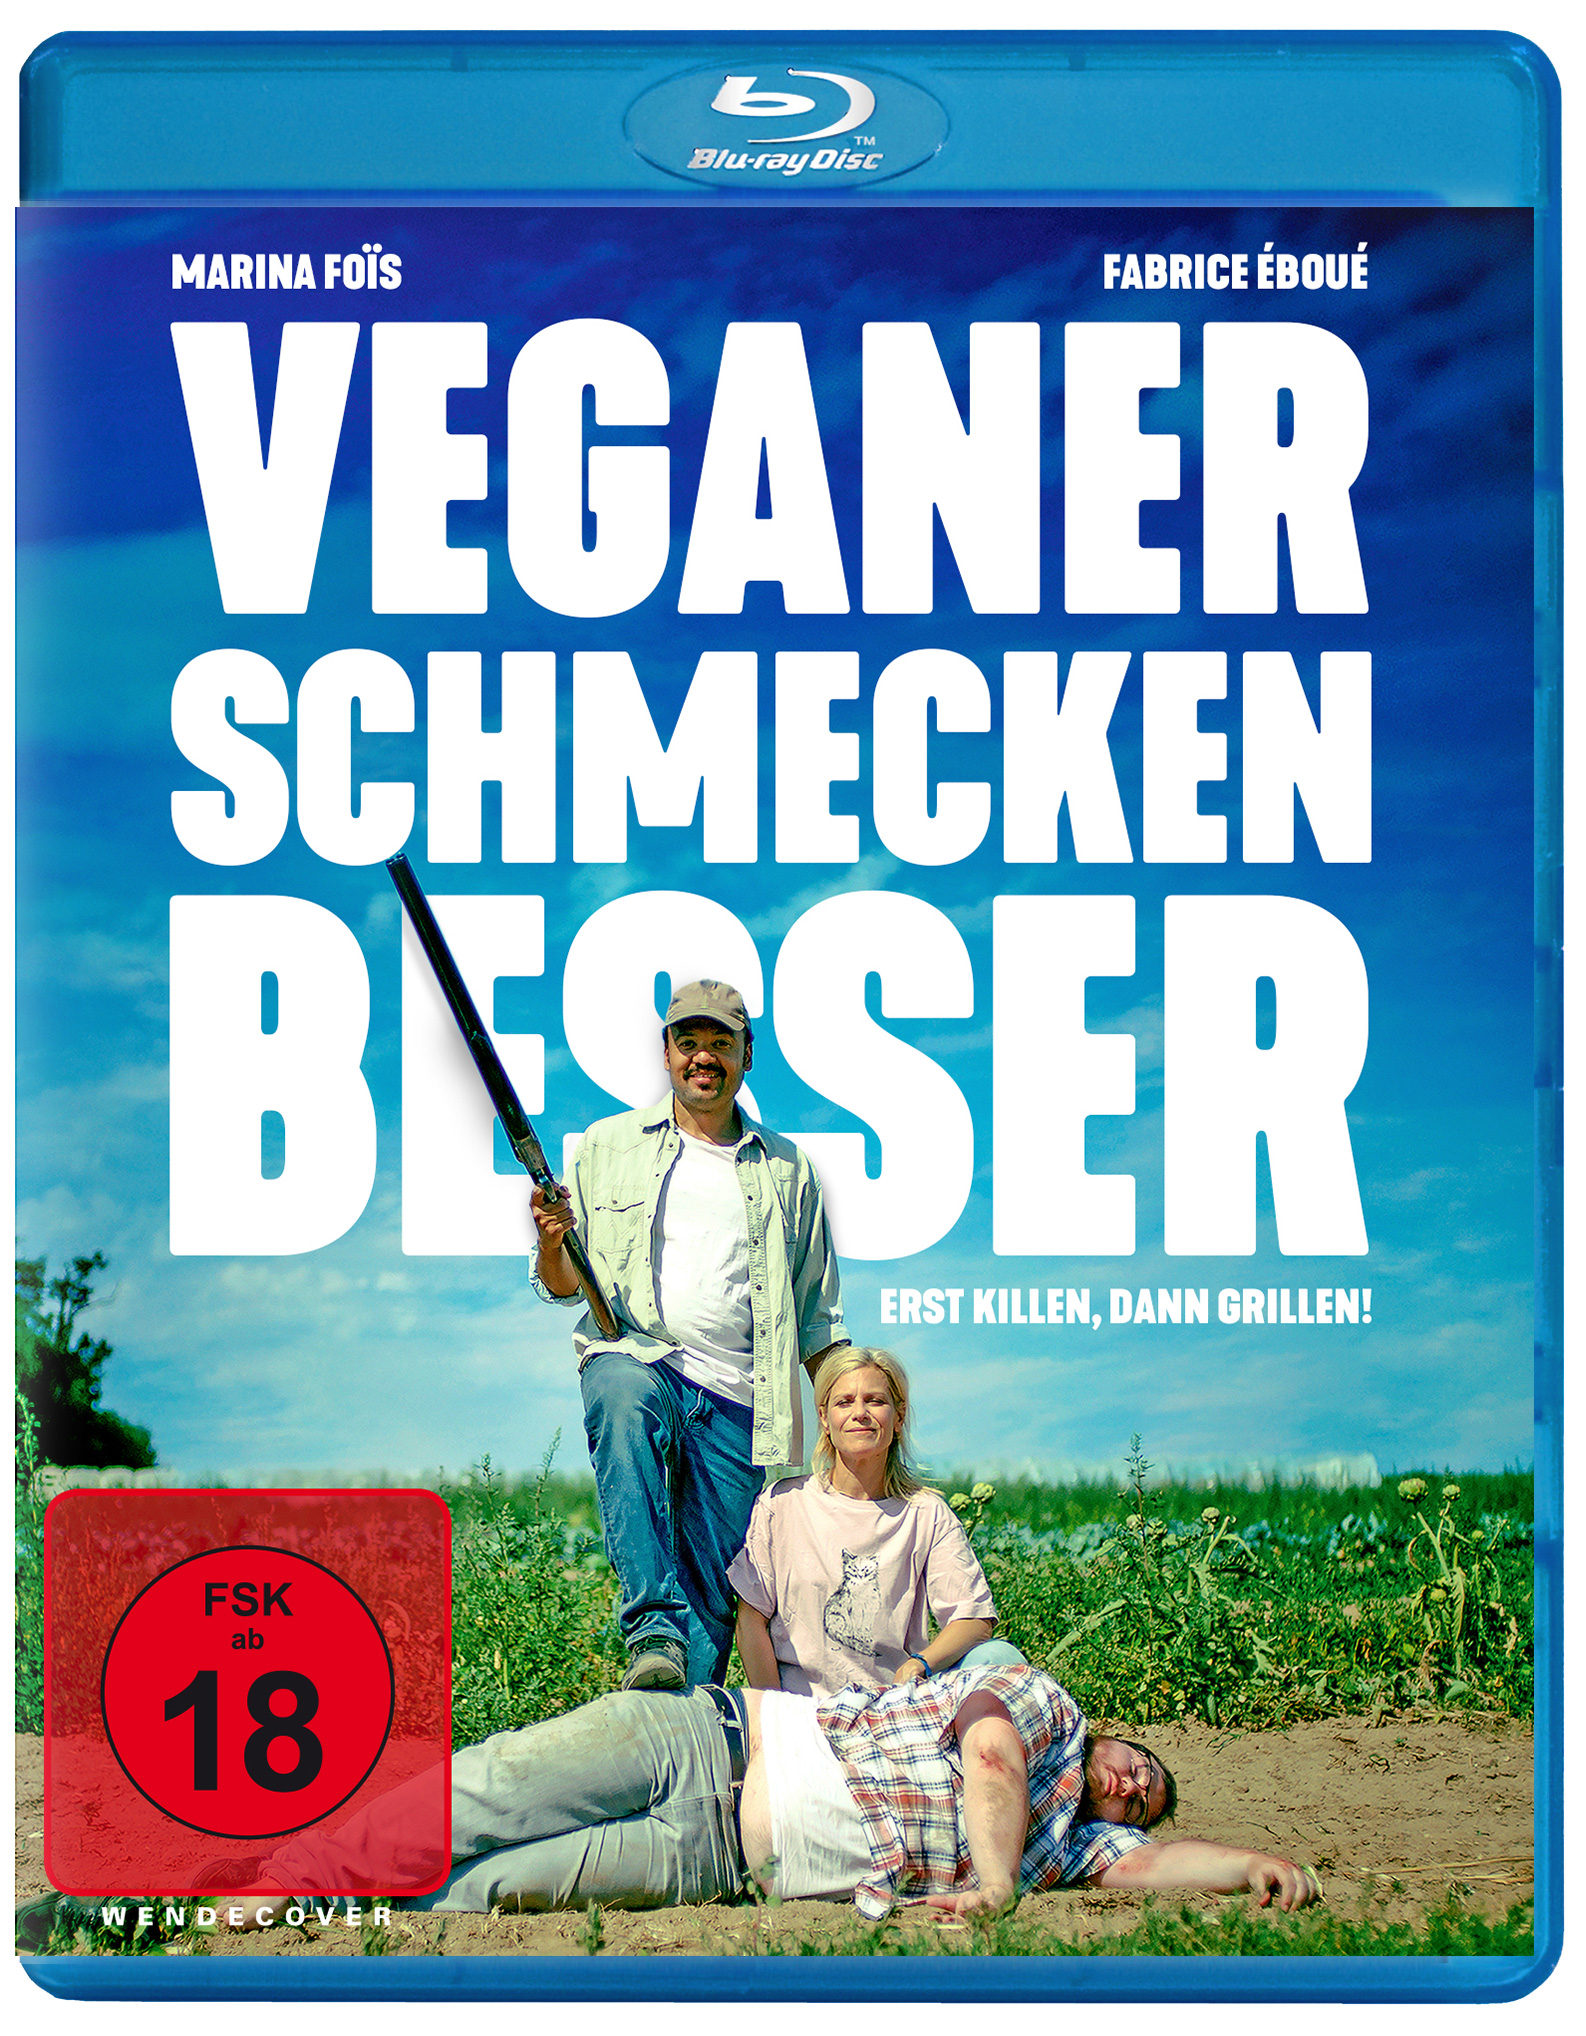 Das Blu-ray Cover zu Veganer schmecken besser